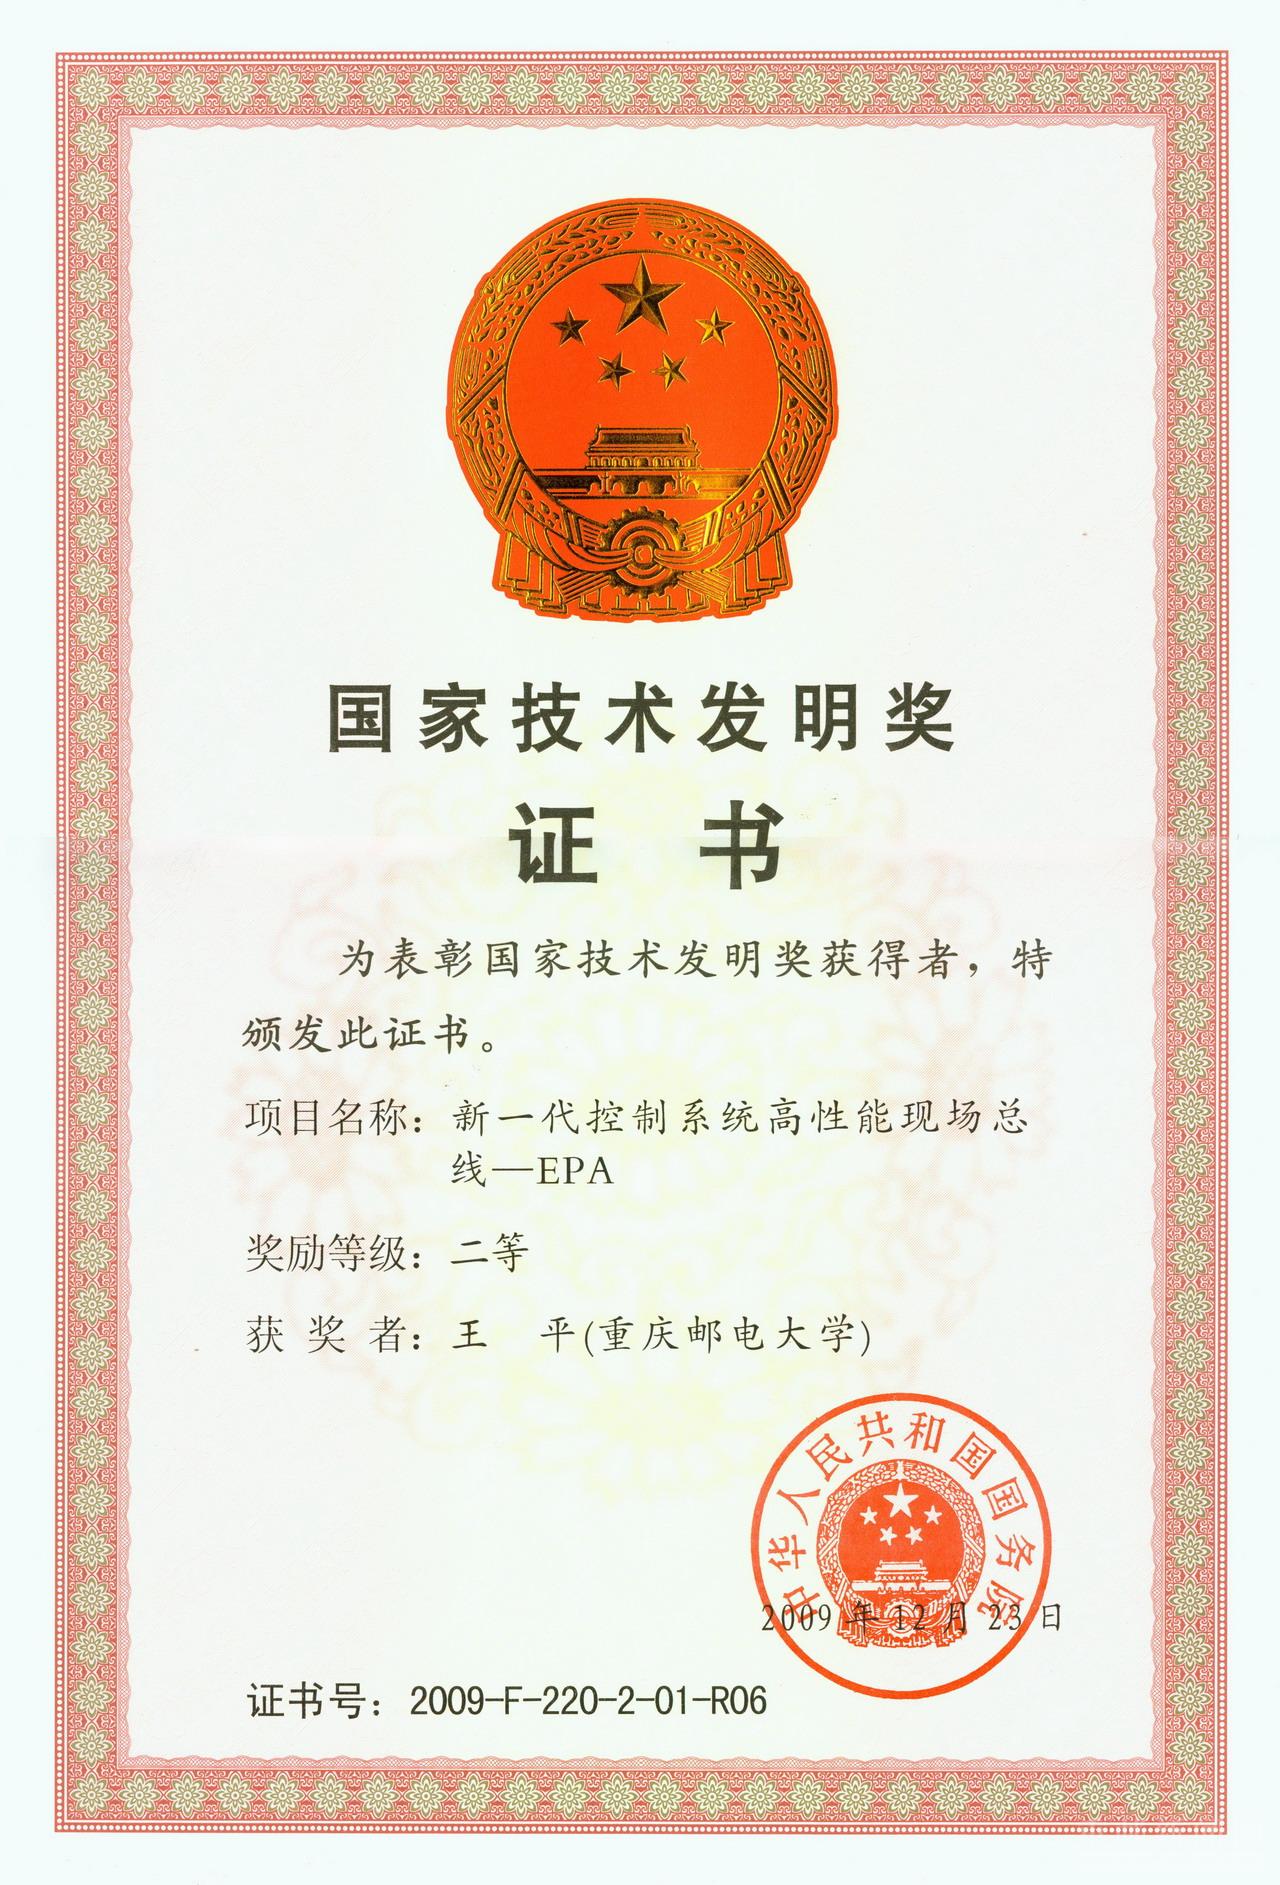 國家技術發明獎(中華人民共和國國家技術發明獎)